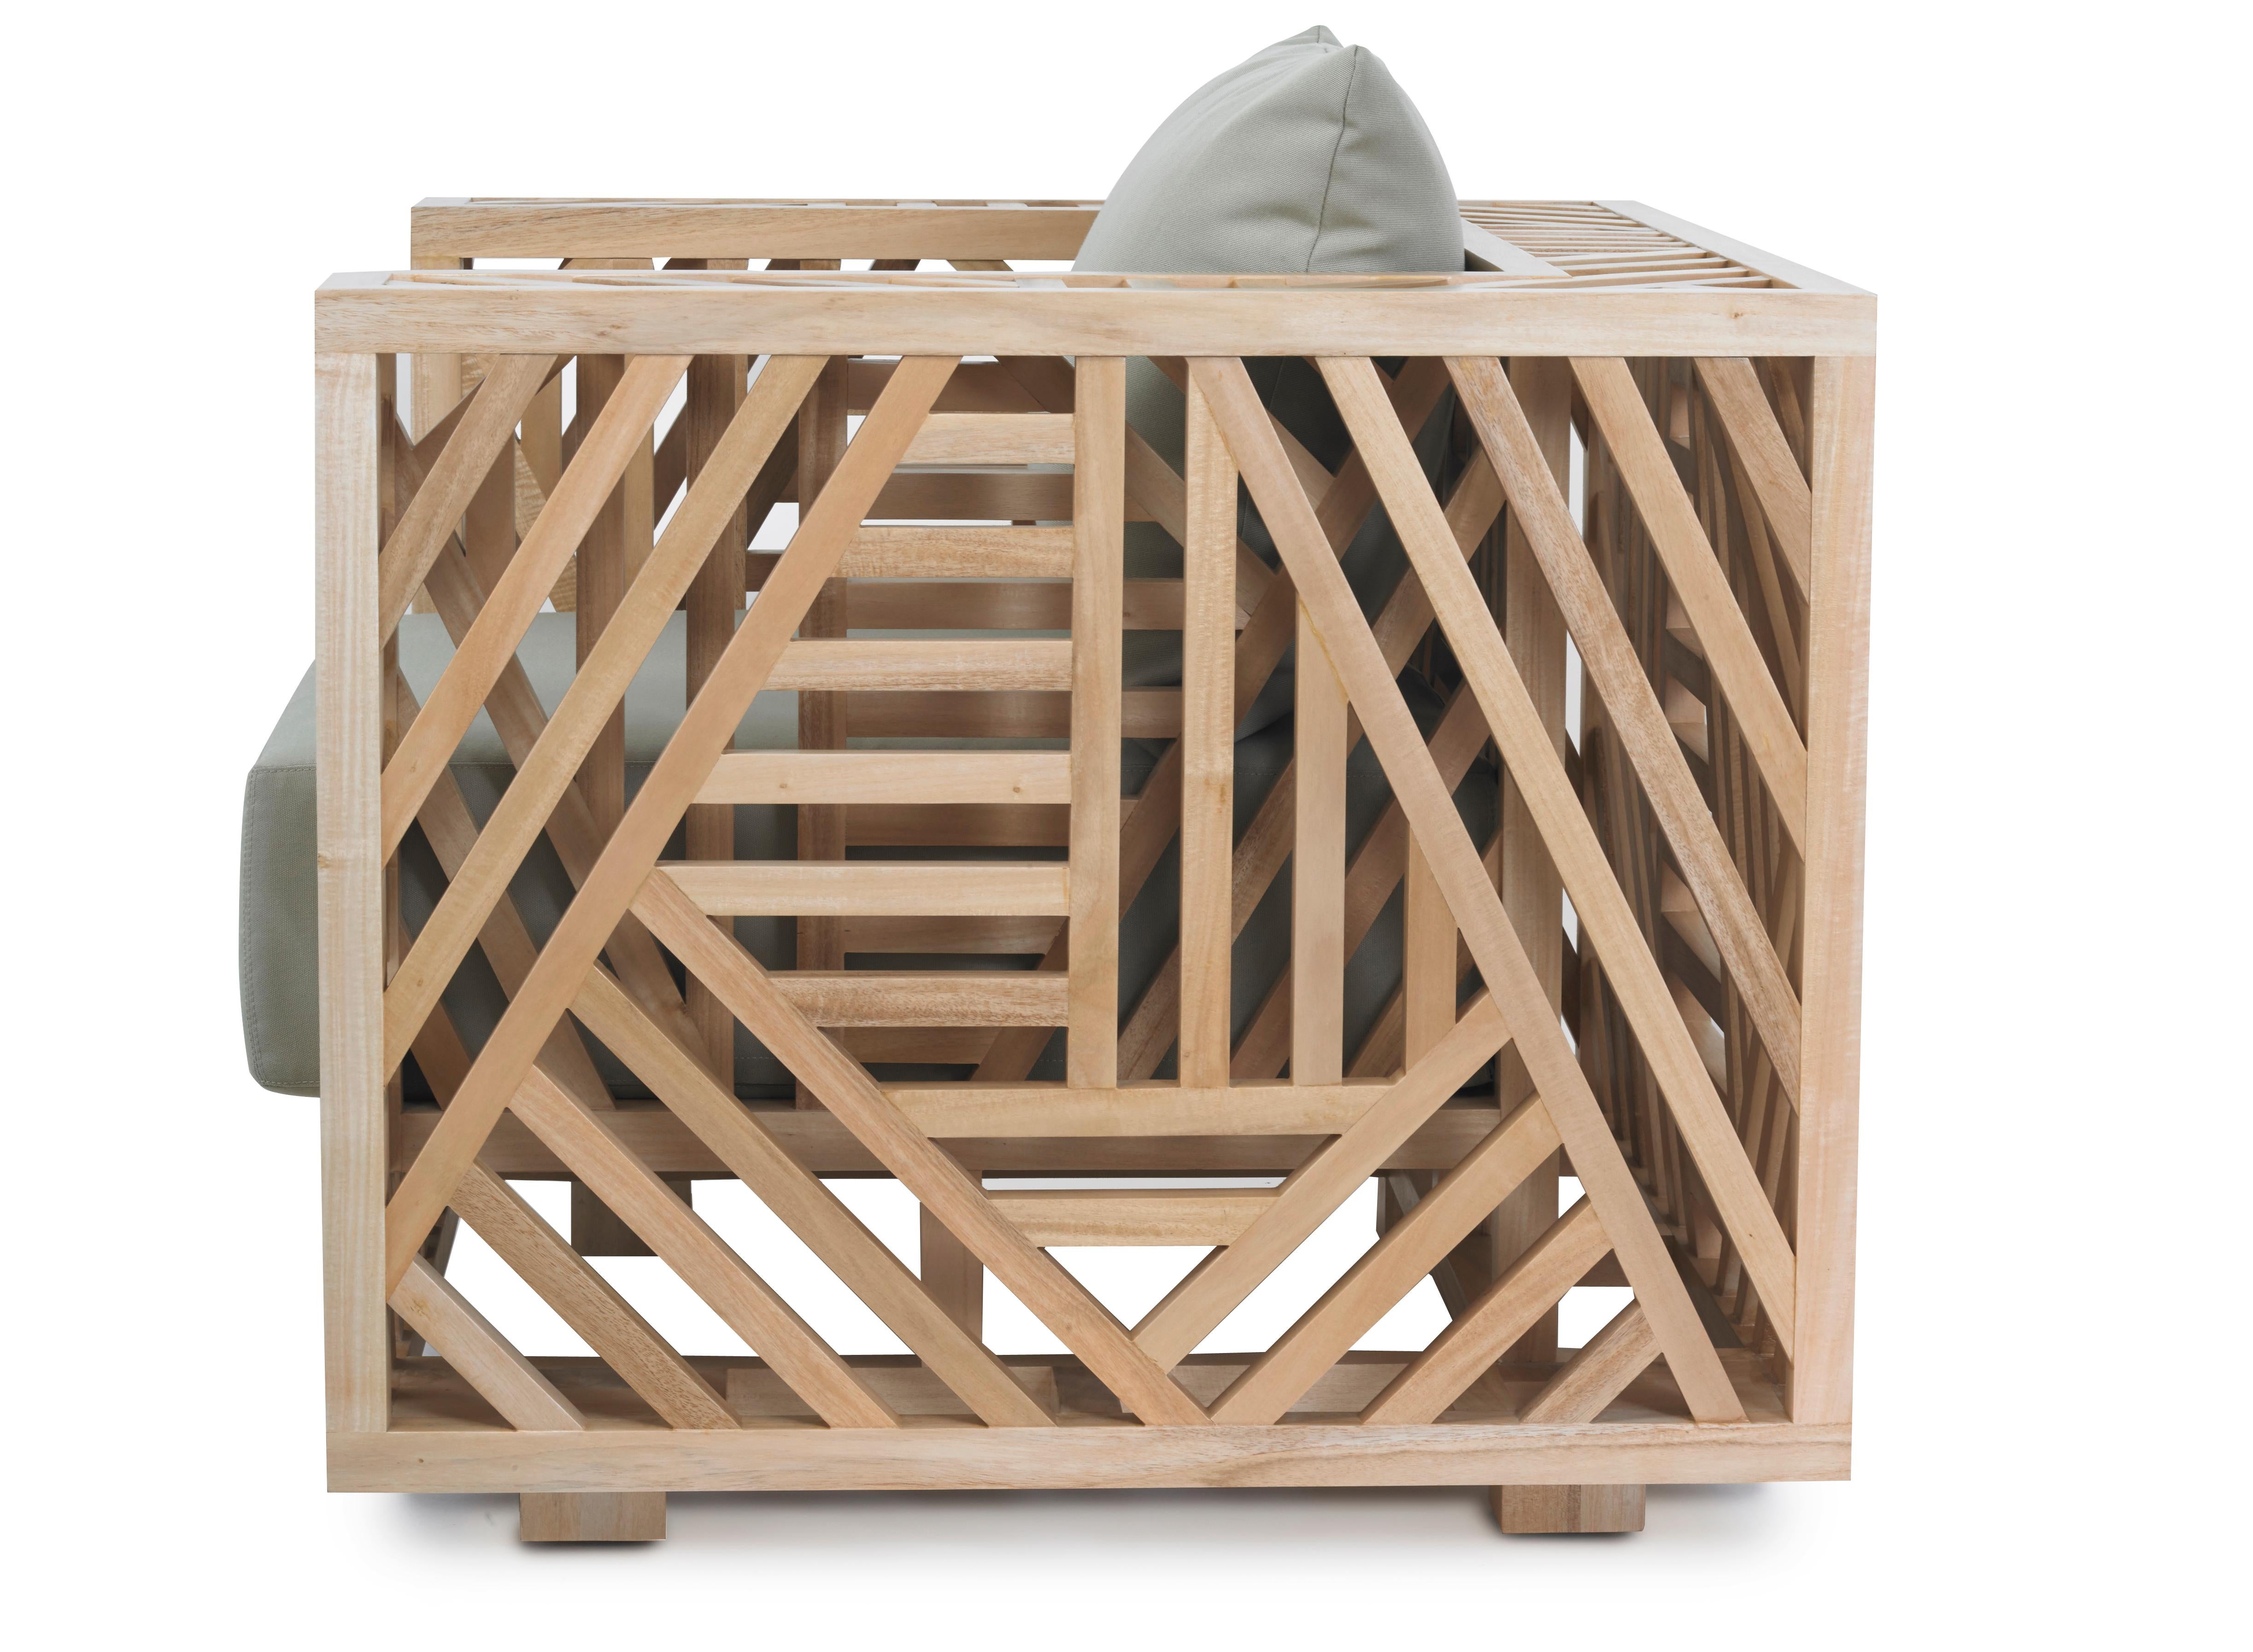 La chaise Aris est une véritable œuvre d'art dans le domaine du travail du bois. Elle présente un design géométrique complexe mais élégant qui est tout simplement stupéfiant. Fabriquée à partir d'innombrables pièces de bois et finie avec une patine